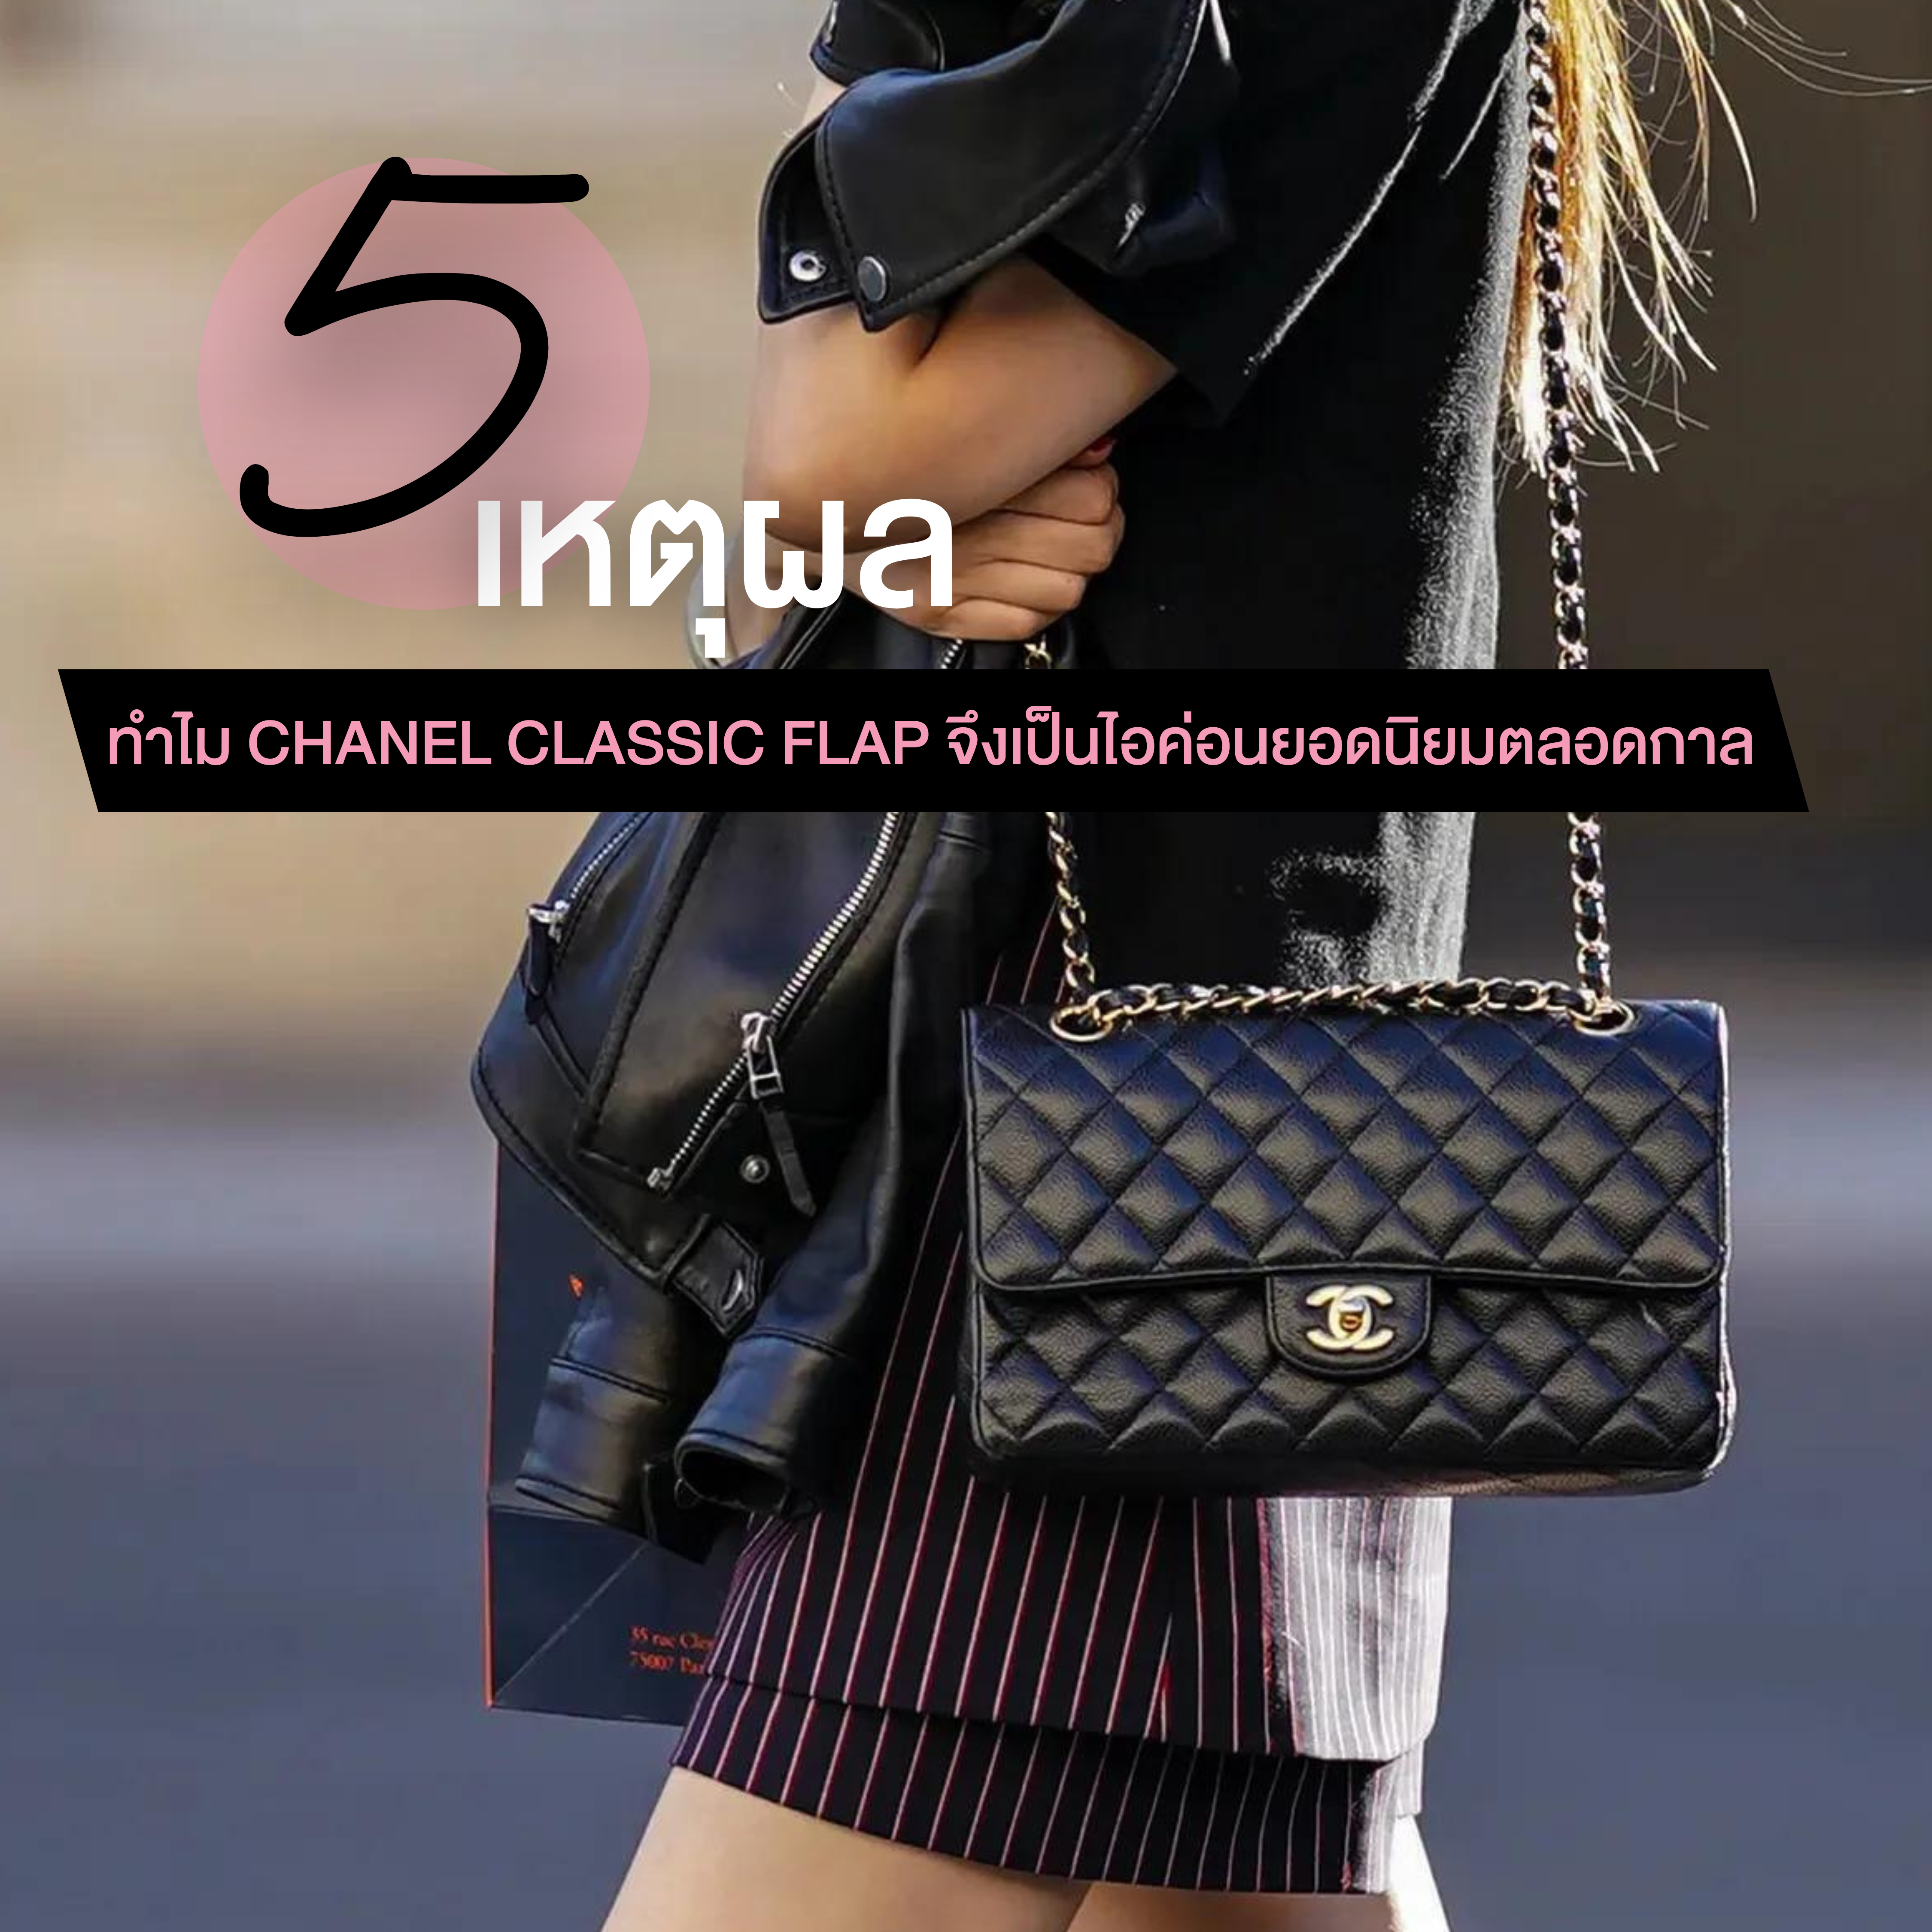 5 เหตุผลทำไม Chanel Classic Flap จึงเป็นไอค่อนยอดนิยมตลอดกาล